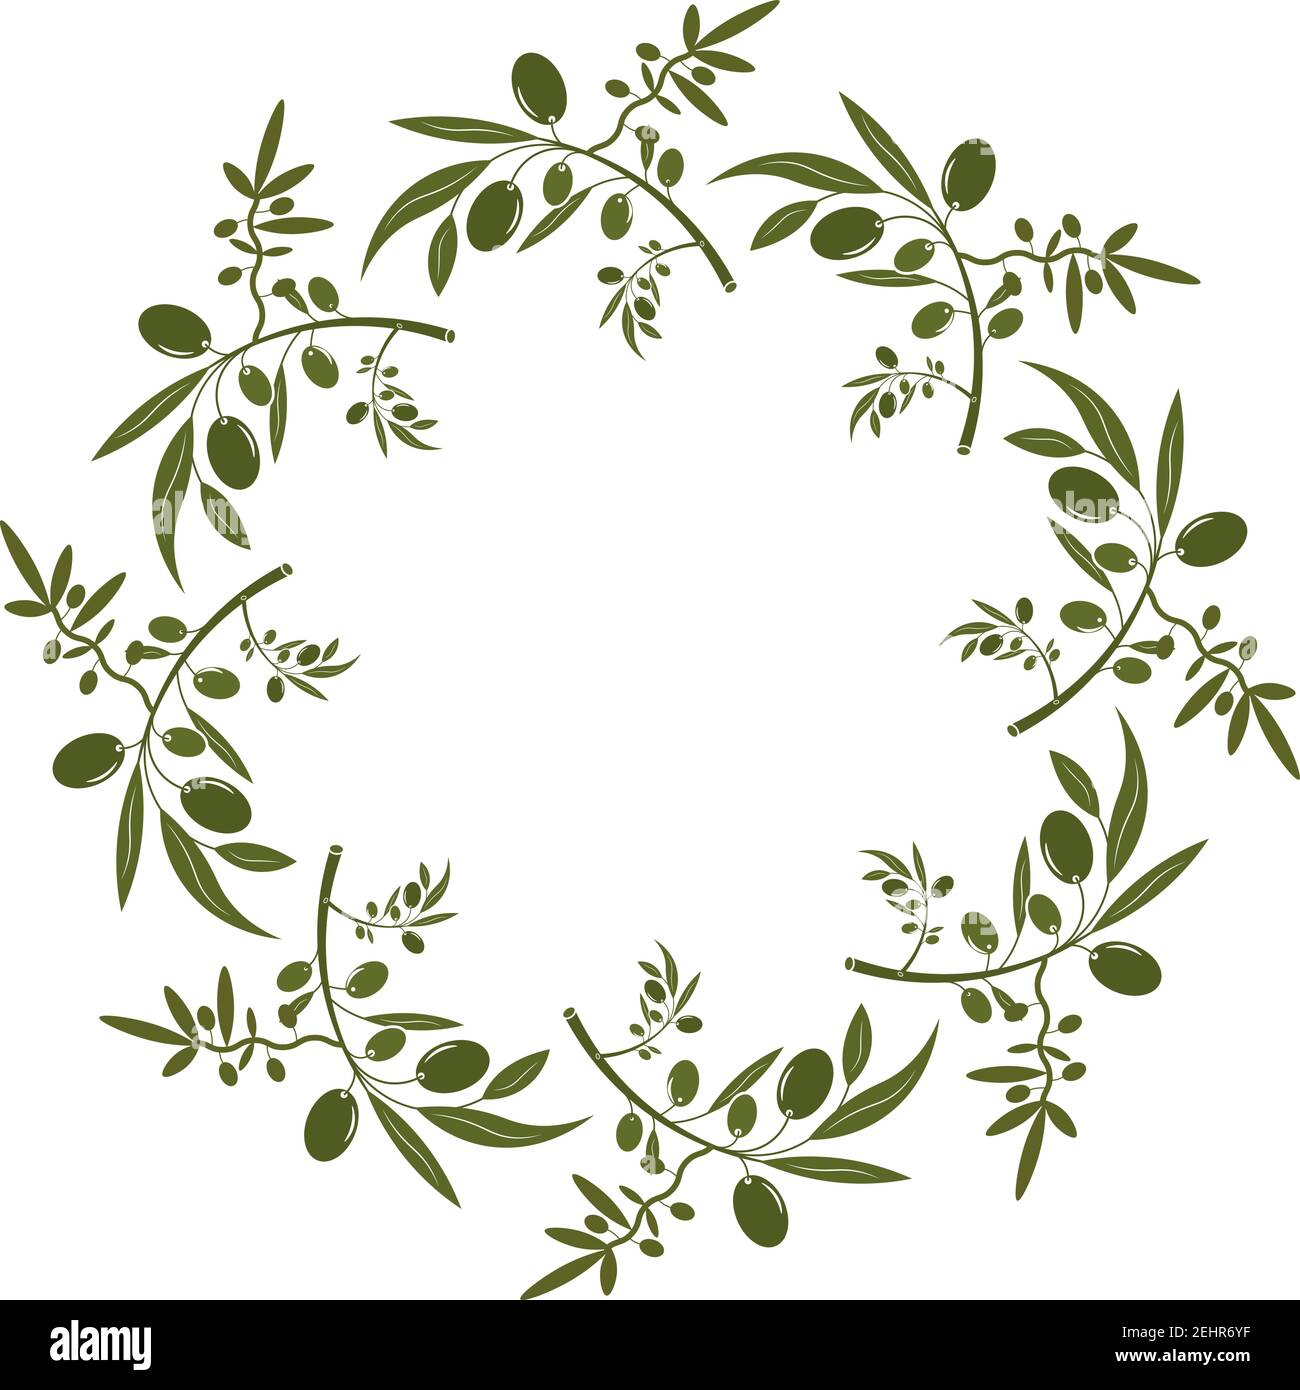 Corona di olivo con bacche e foglie. Contorno vettoriale floreale disegnato a mano con frutta d'oliva e rami di alberi con foglie isolate su sfondo bianco. F Illustrazione Vettoriale